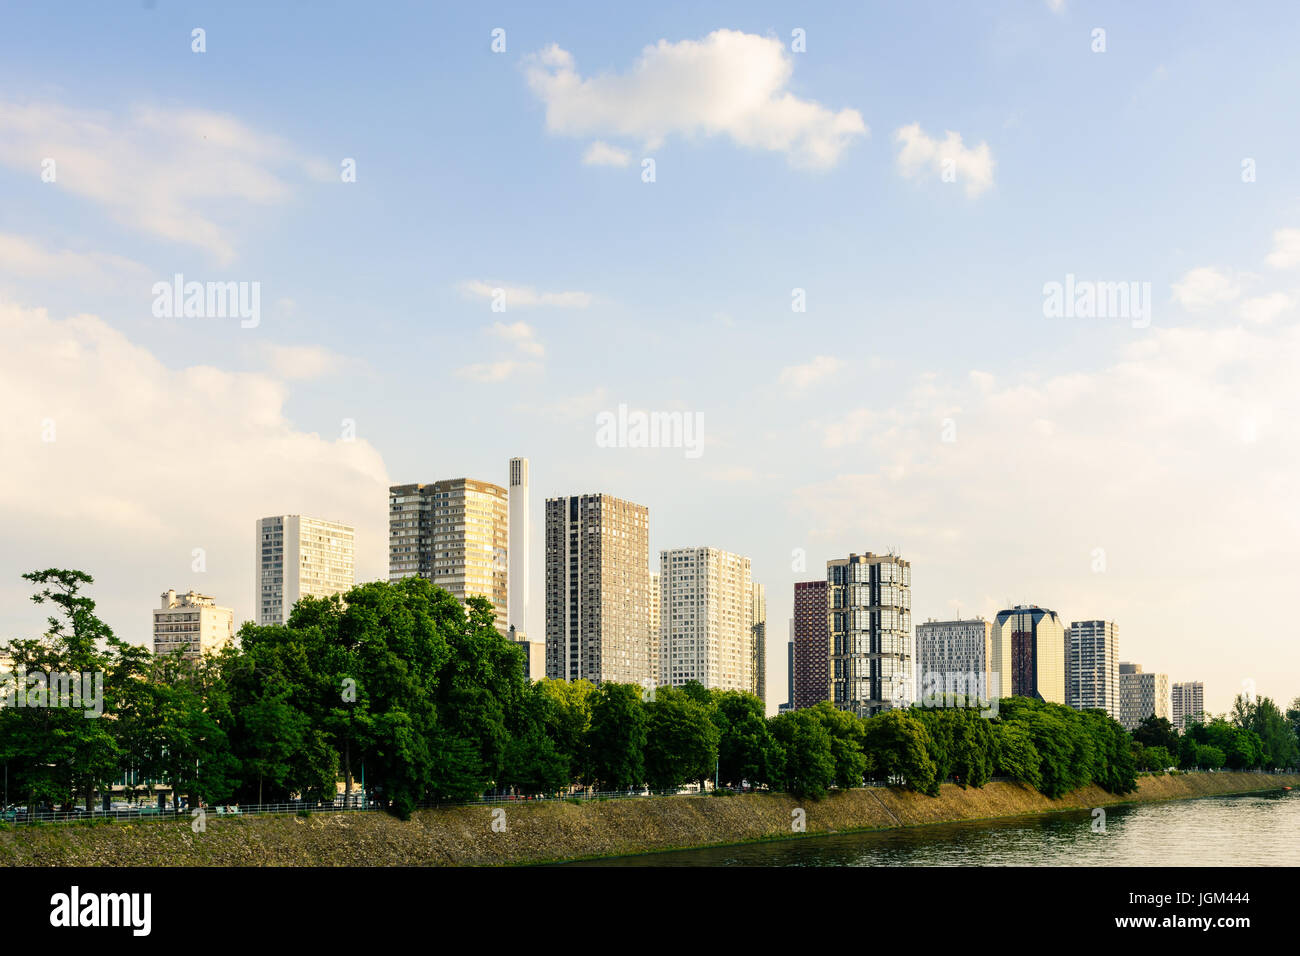 Le Front de Seine cityline dans le 15ème arrondissement de Paris avec la Seine au premier plan. Banque D'Images